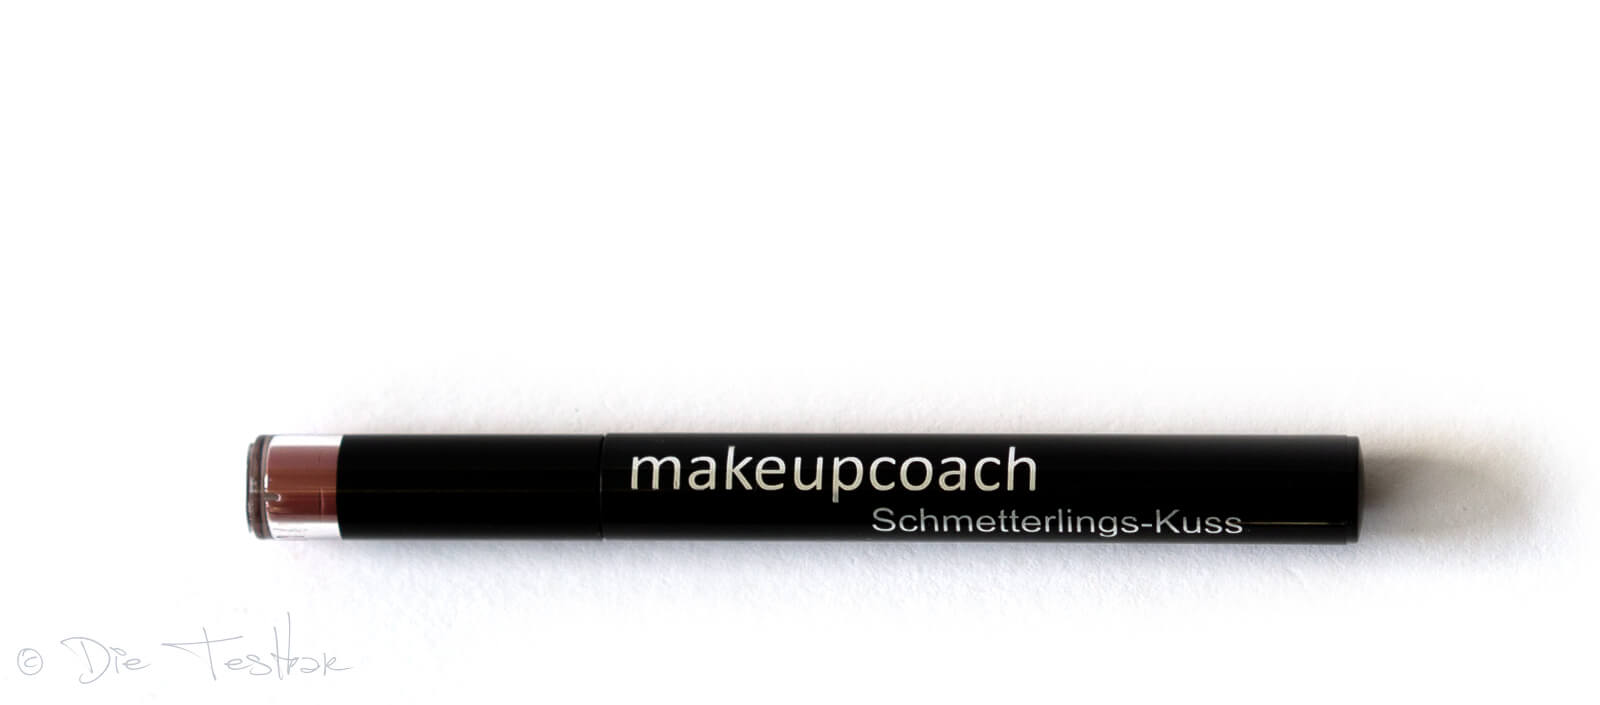 Für wunderschöne Lippen - Hochwertiges Lippen-Make-up vom makeupcoach 16